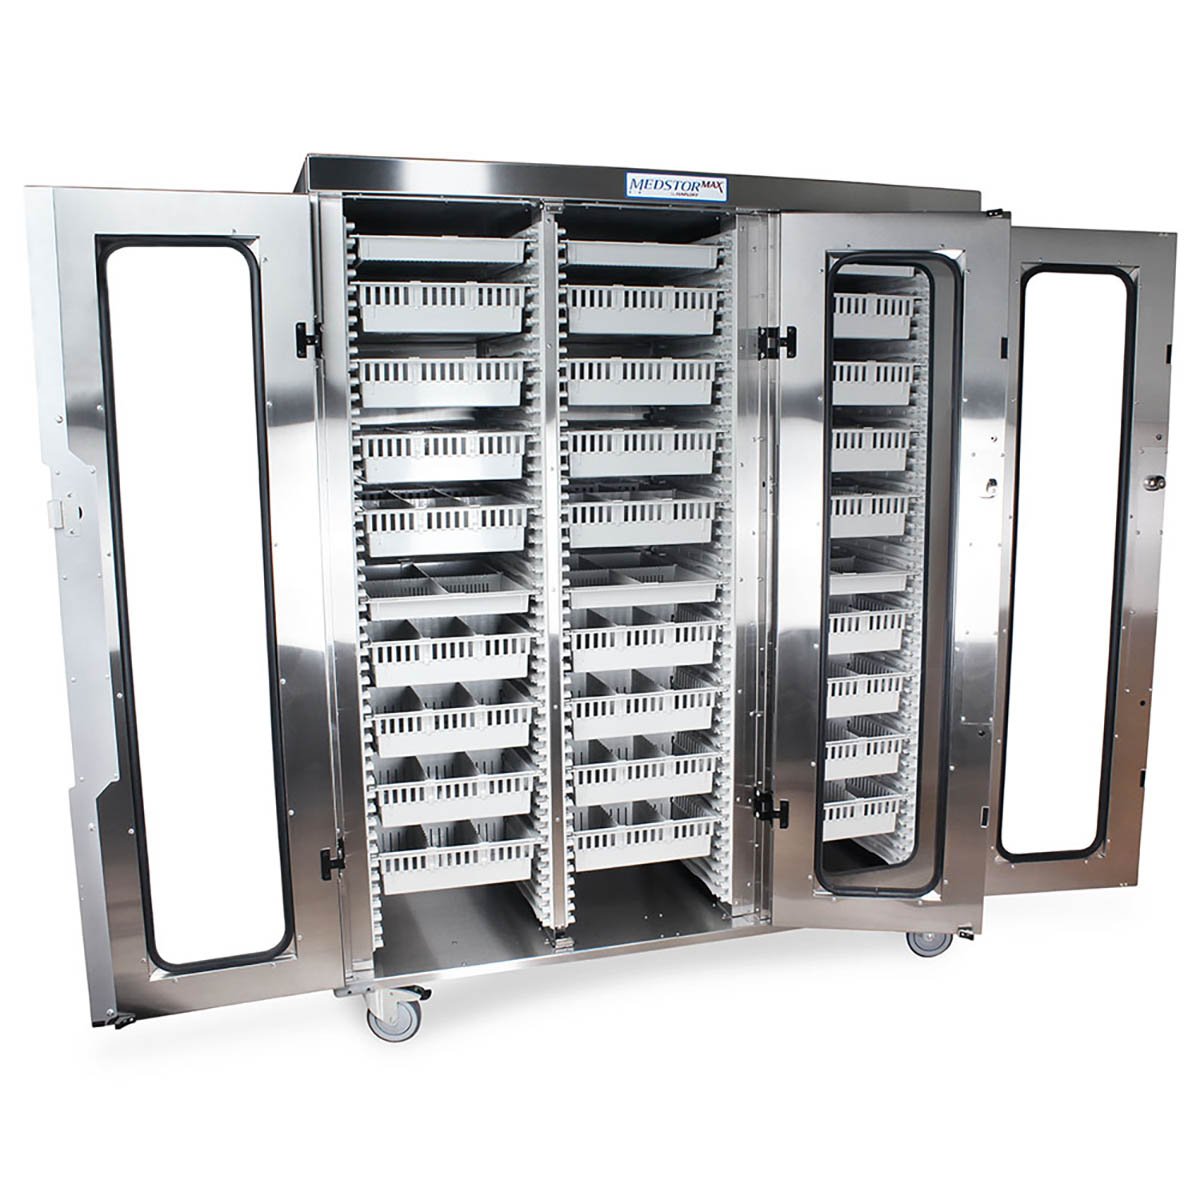 3″ Wire Basket for MedStor Max Cabinets, One Long Divider, 81070-1 - Harloff